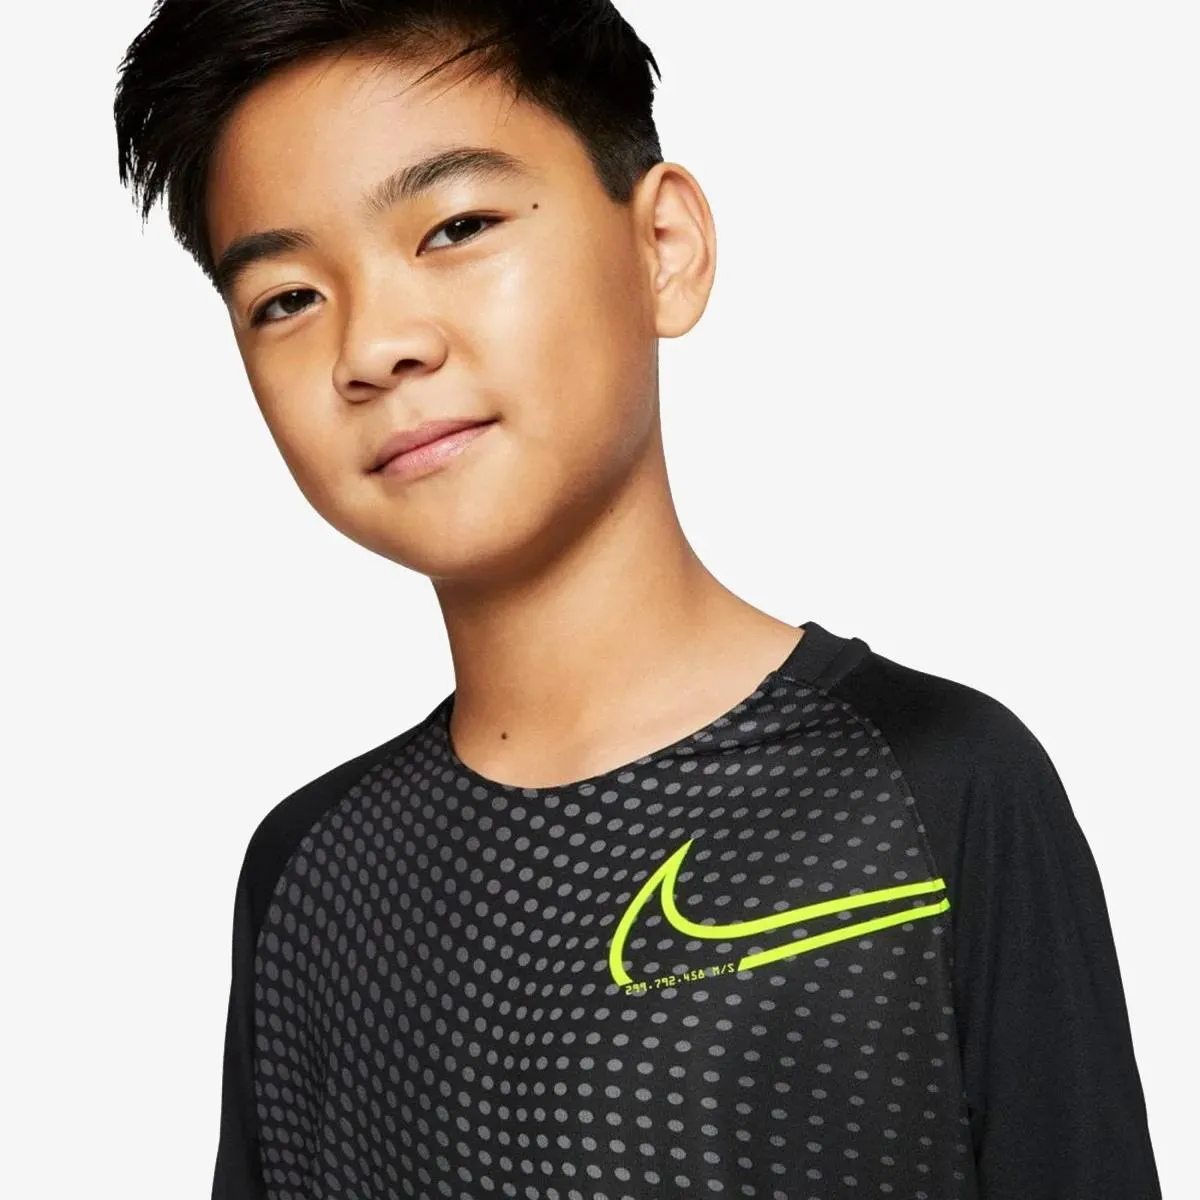 Nike T-shirt CR7 B NK DRY TOP SS 